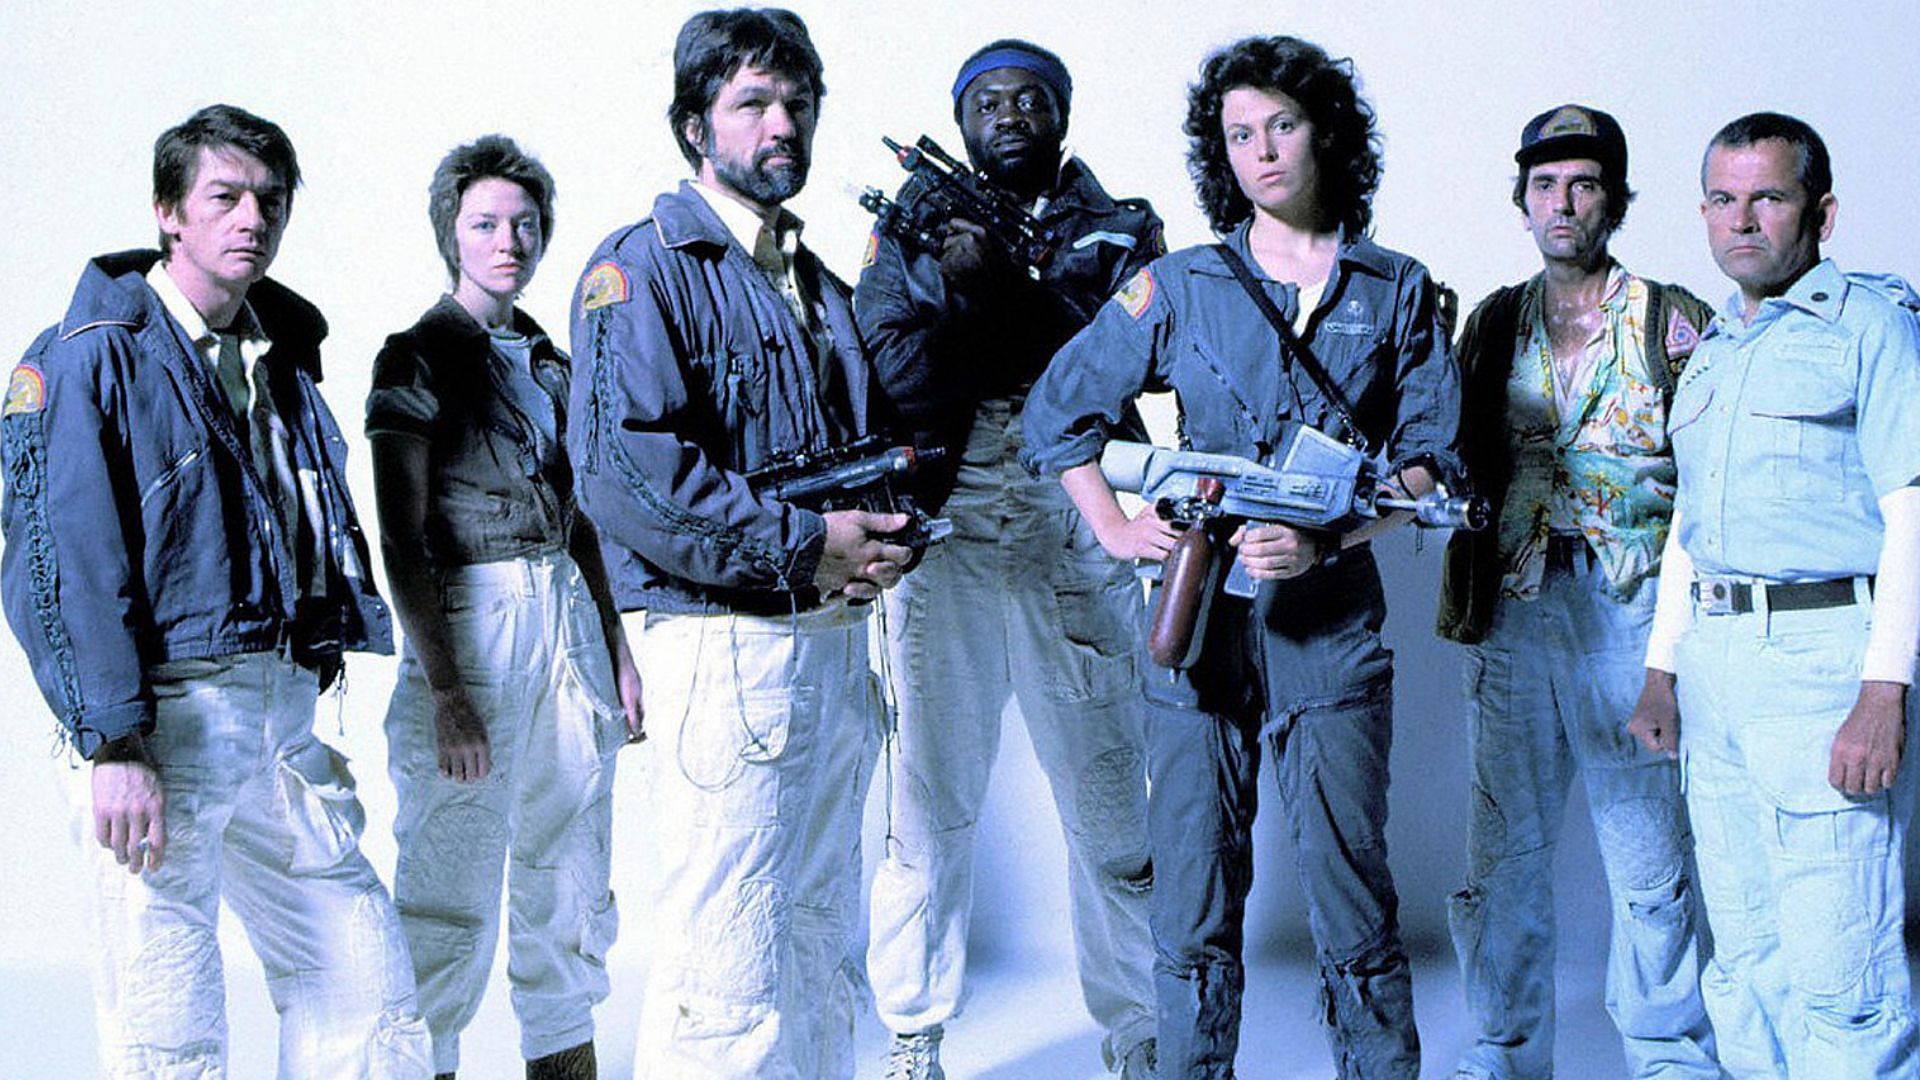 Alien 1979 cast (Image via Ultimate Classic Rock)